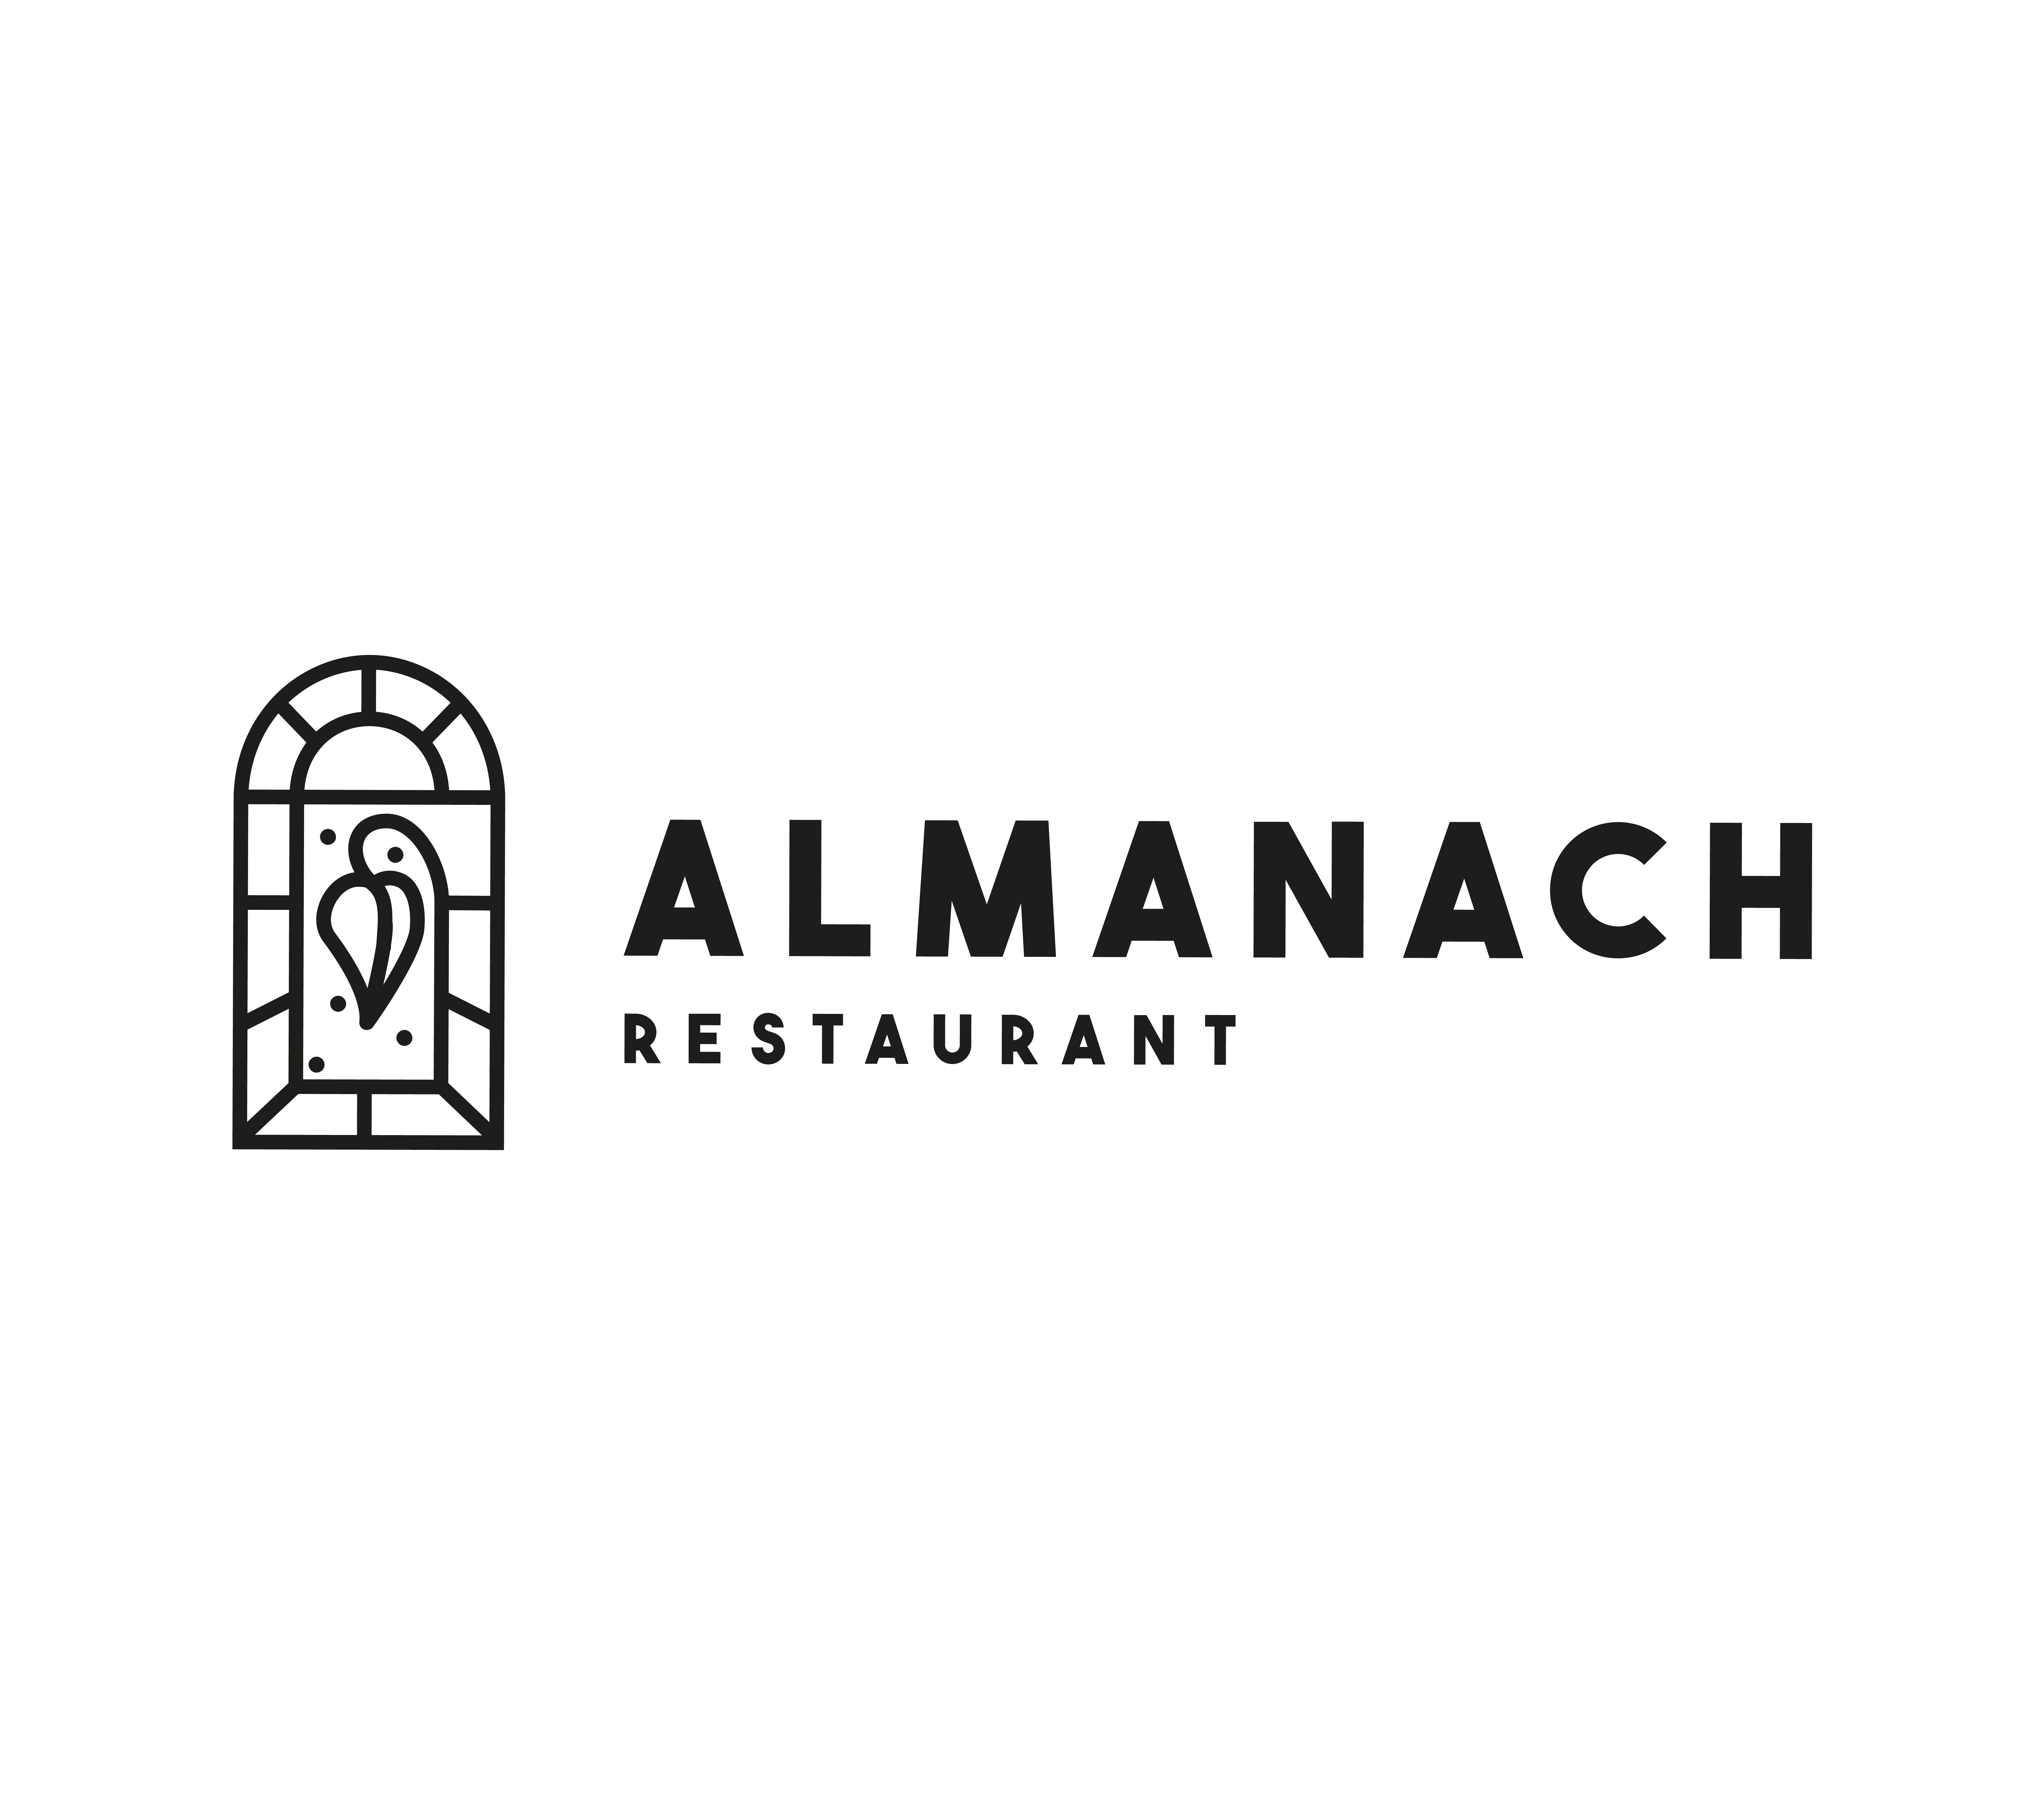 Almanach restaurant